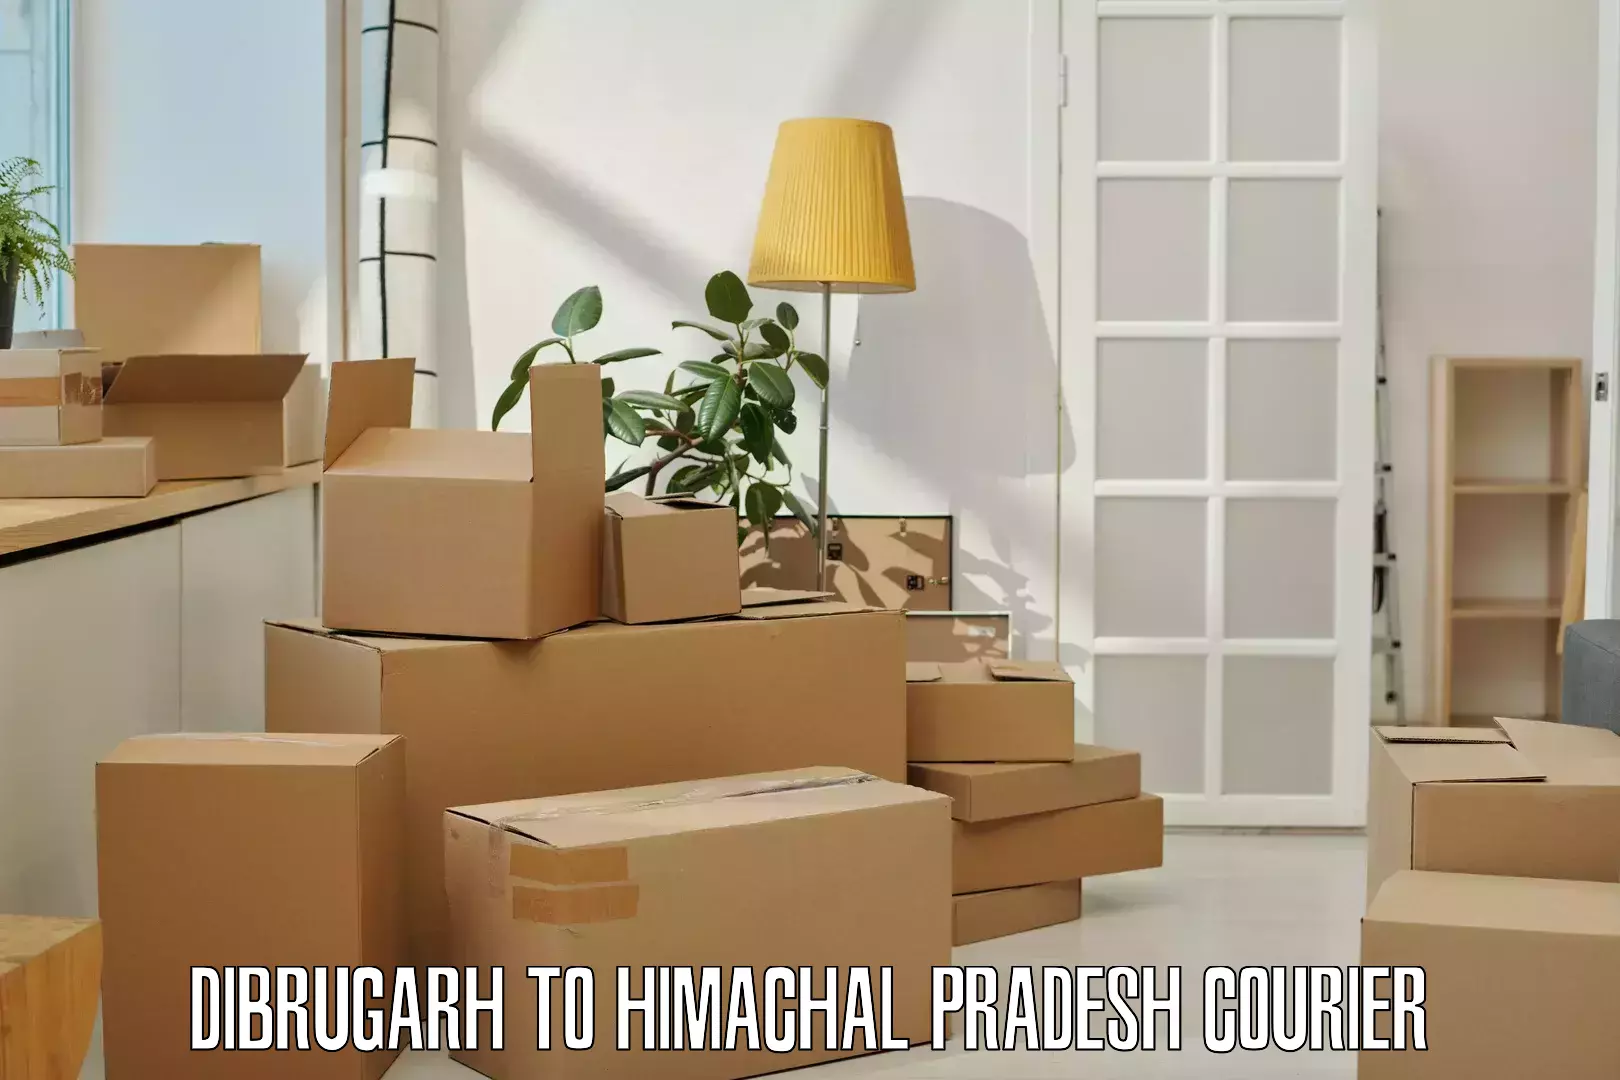 Reliable parcel services Dibrugarh to Joginder Nagar